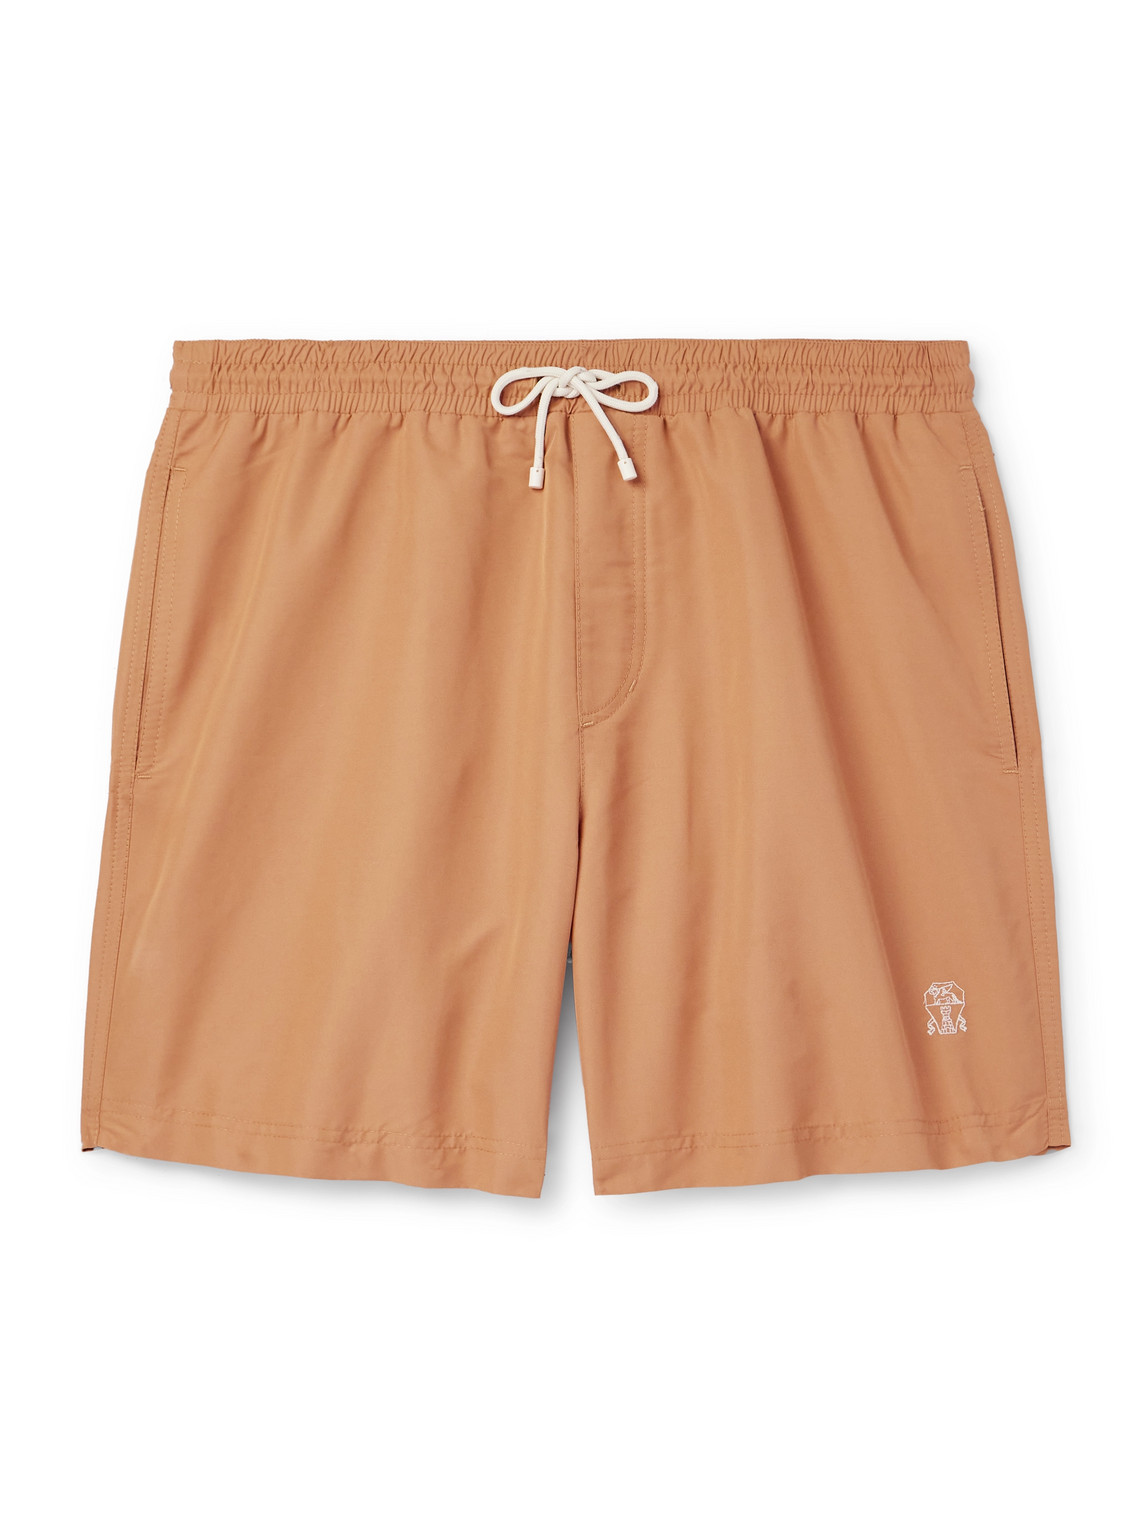 Brunello Cucinelli - Straight-Leg Mid-Length Logo-Embroidered Swim Shorts - Men - Orange - M von Brunello Cucinelli